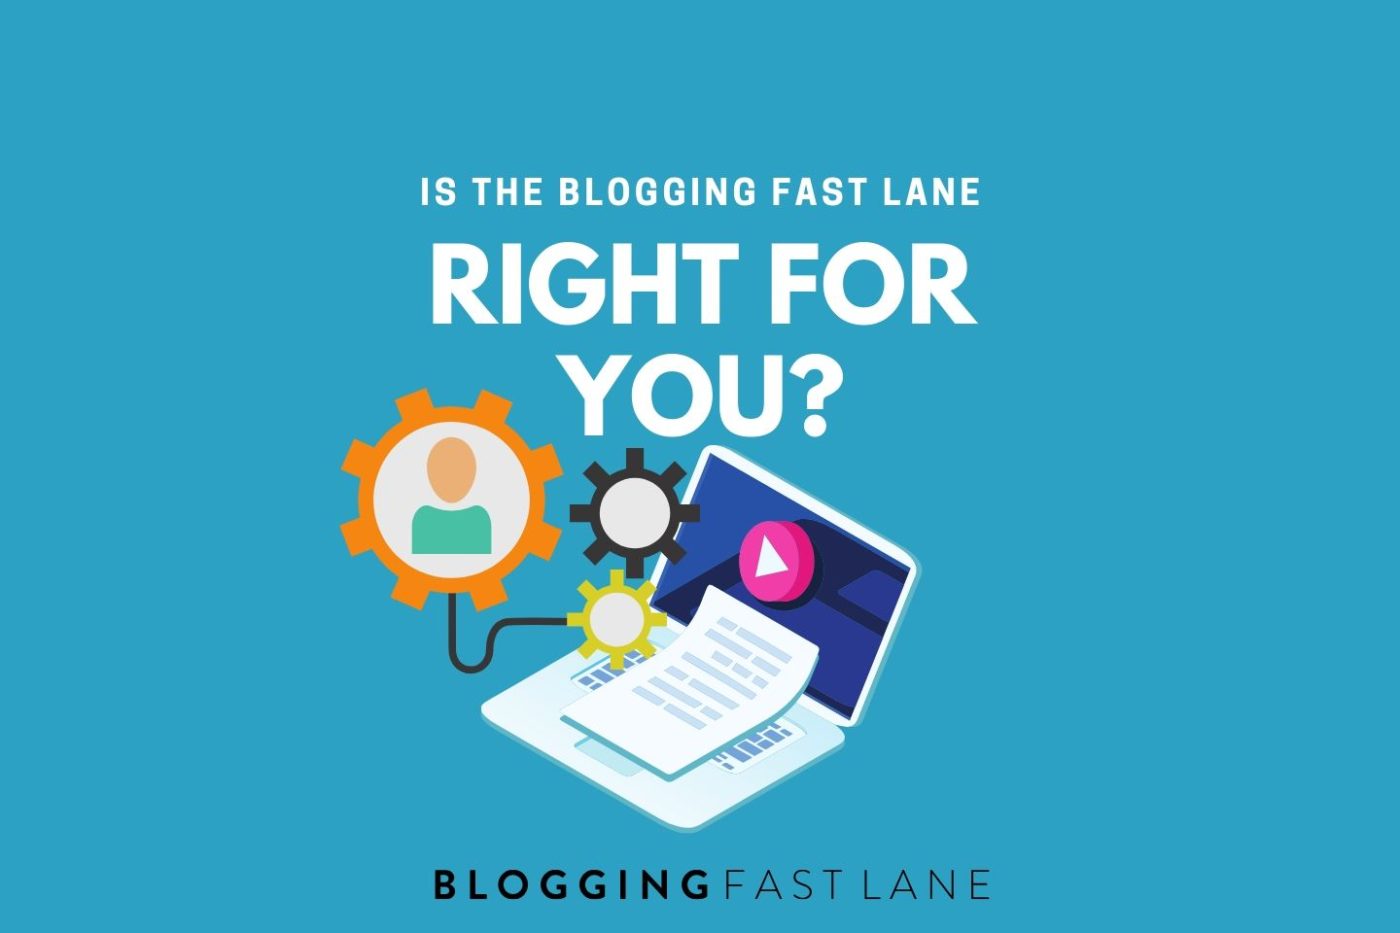 blogging fast lane course reviews